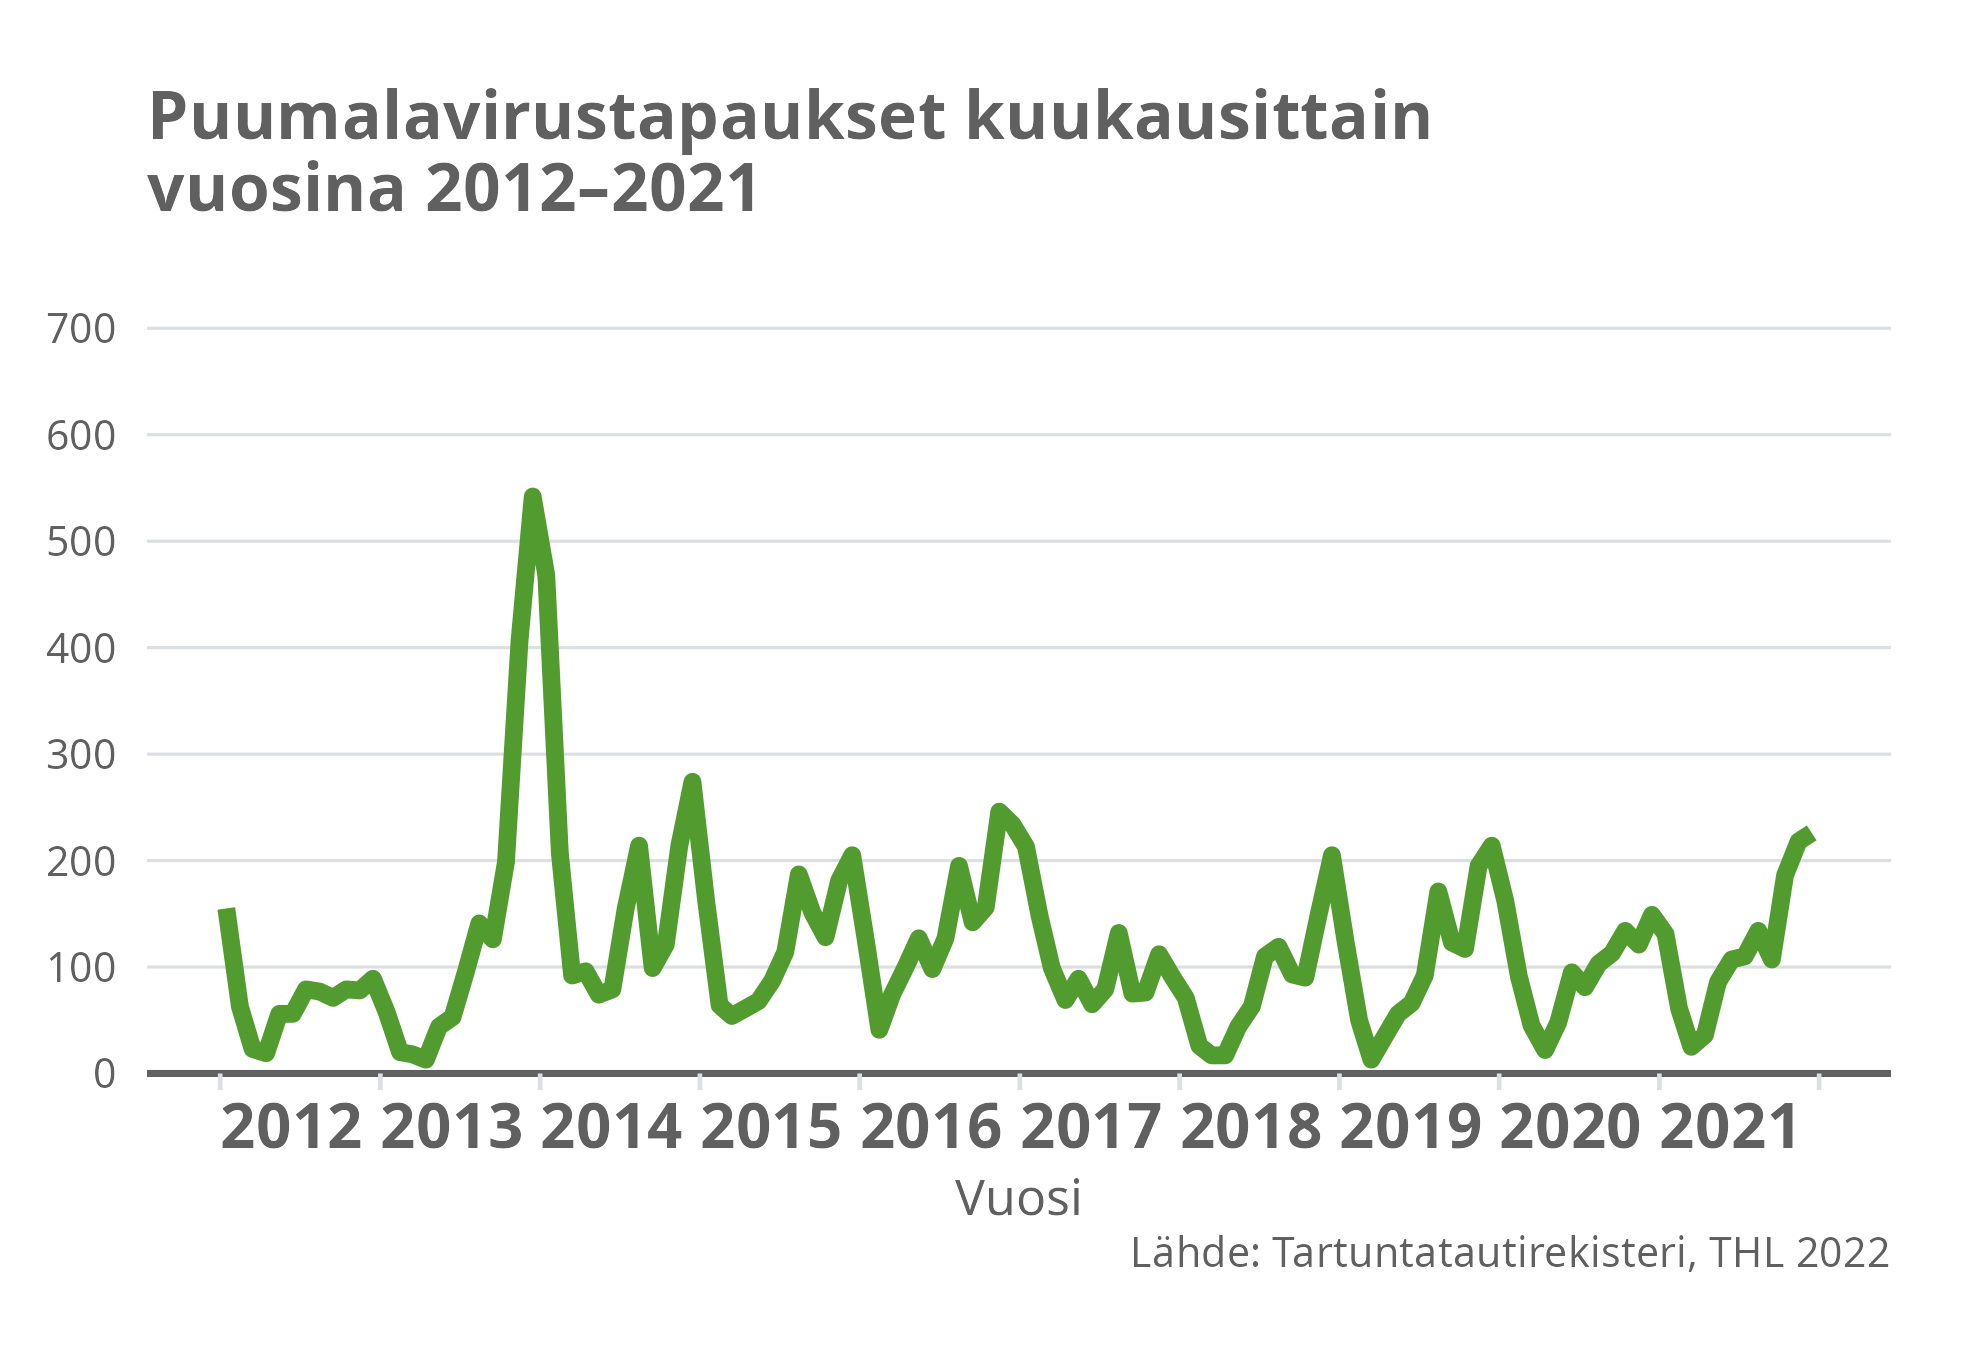 Puumalavirustapaukset kuukausittain vuosina 2012-2021.